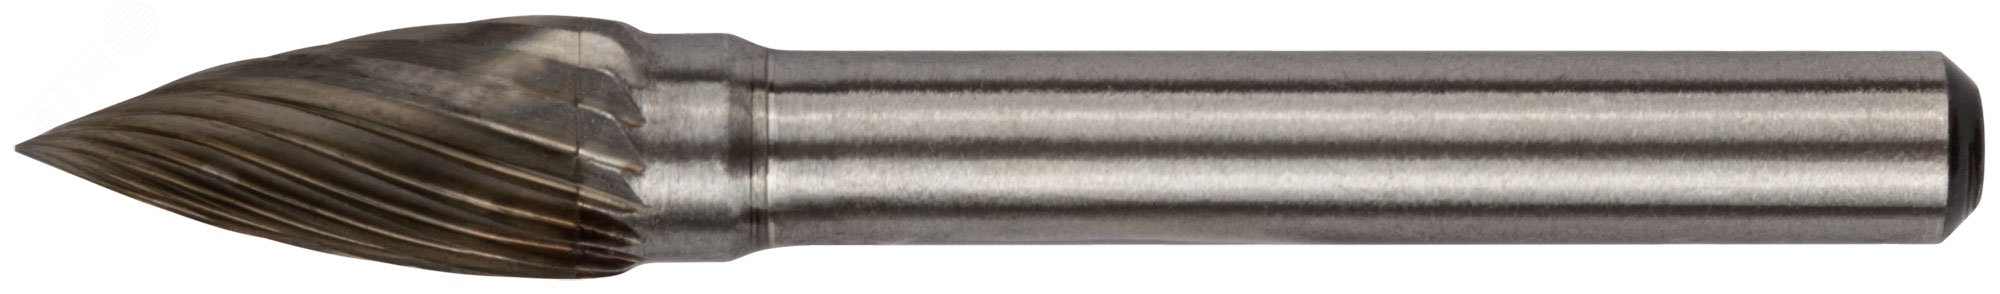 Шарошка карбидная Профи, штифт 6 мм, цилиндрическая с острым наконечником 36594 FIT - превью